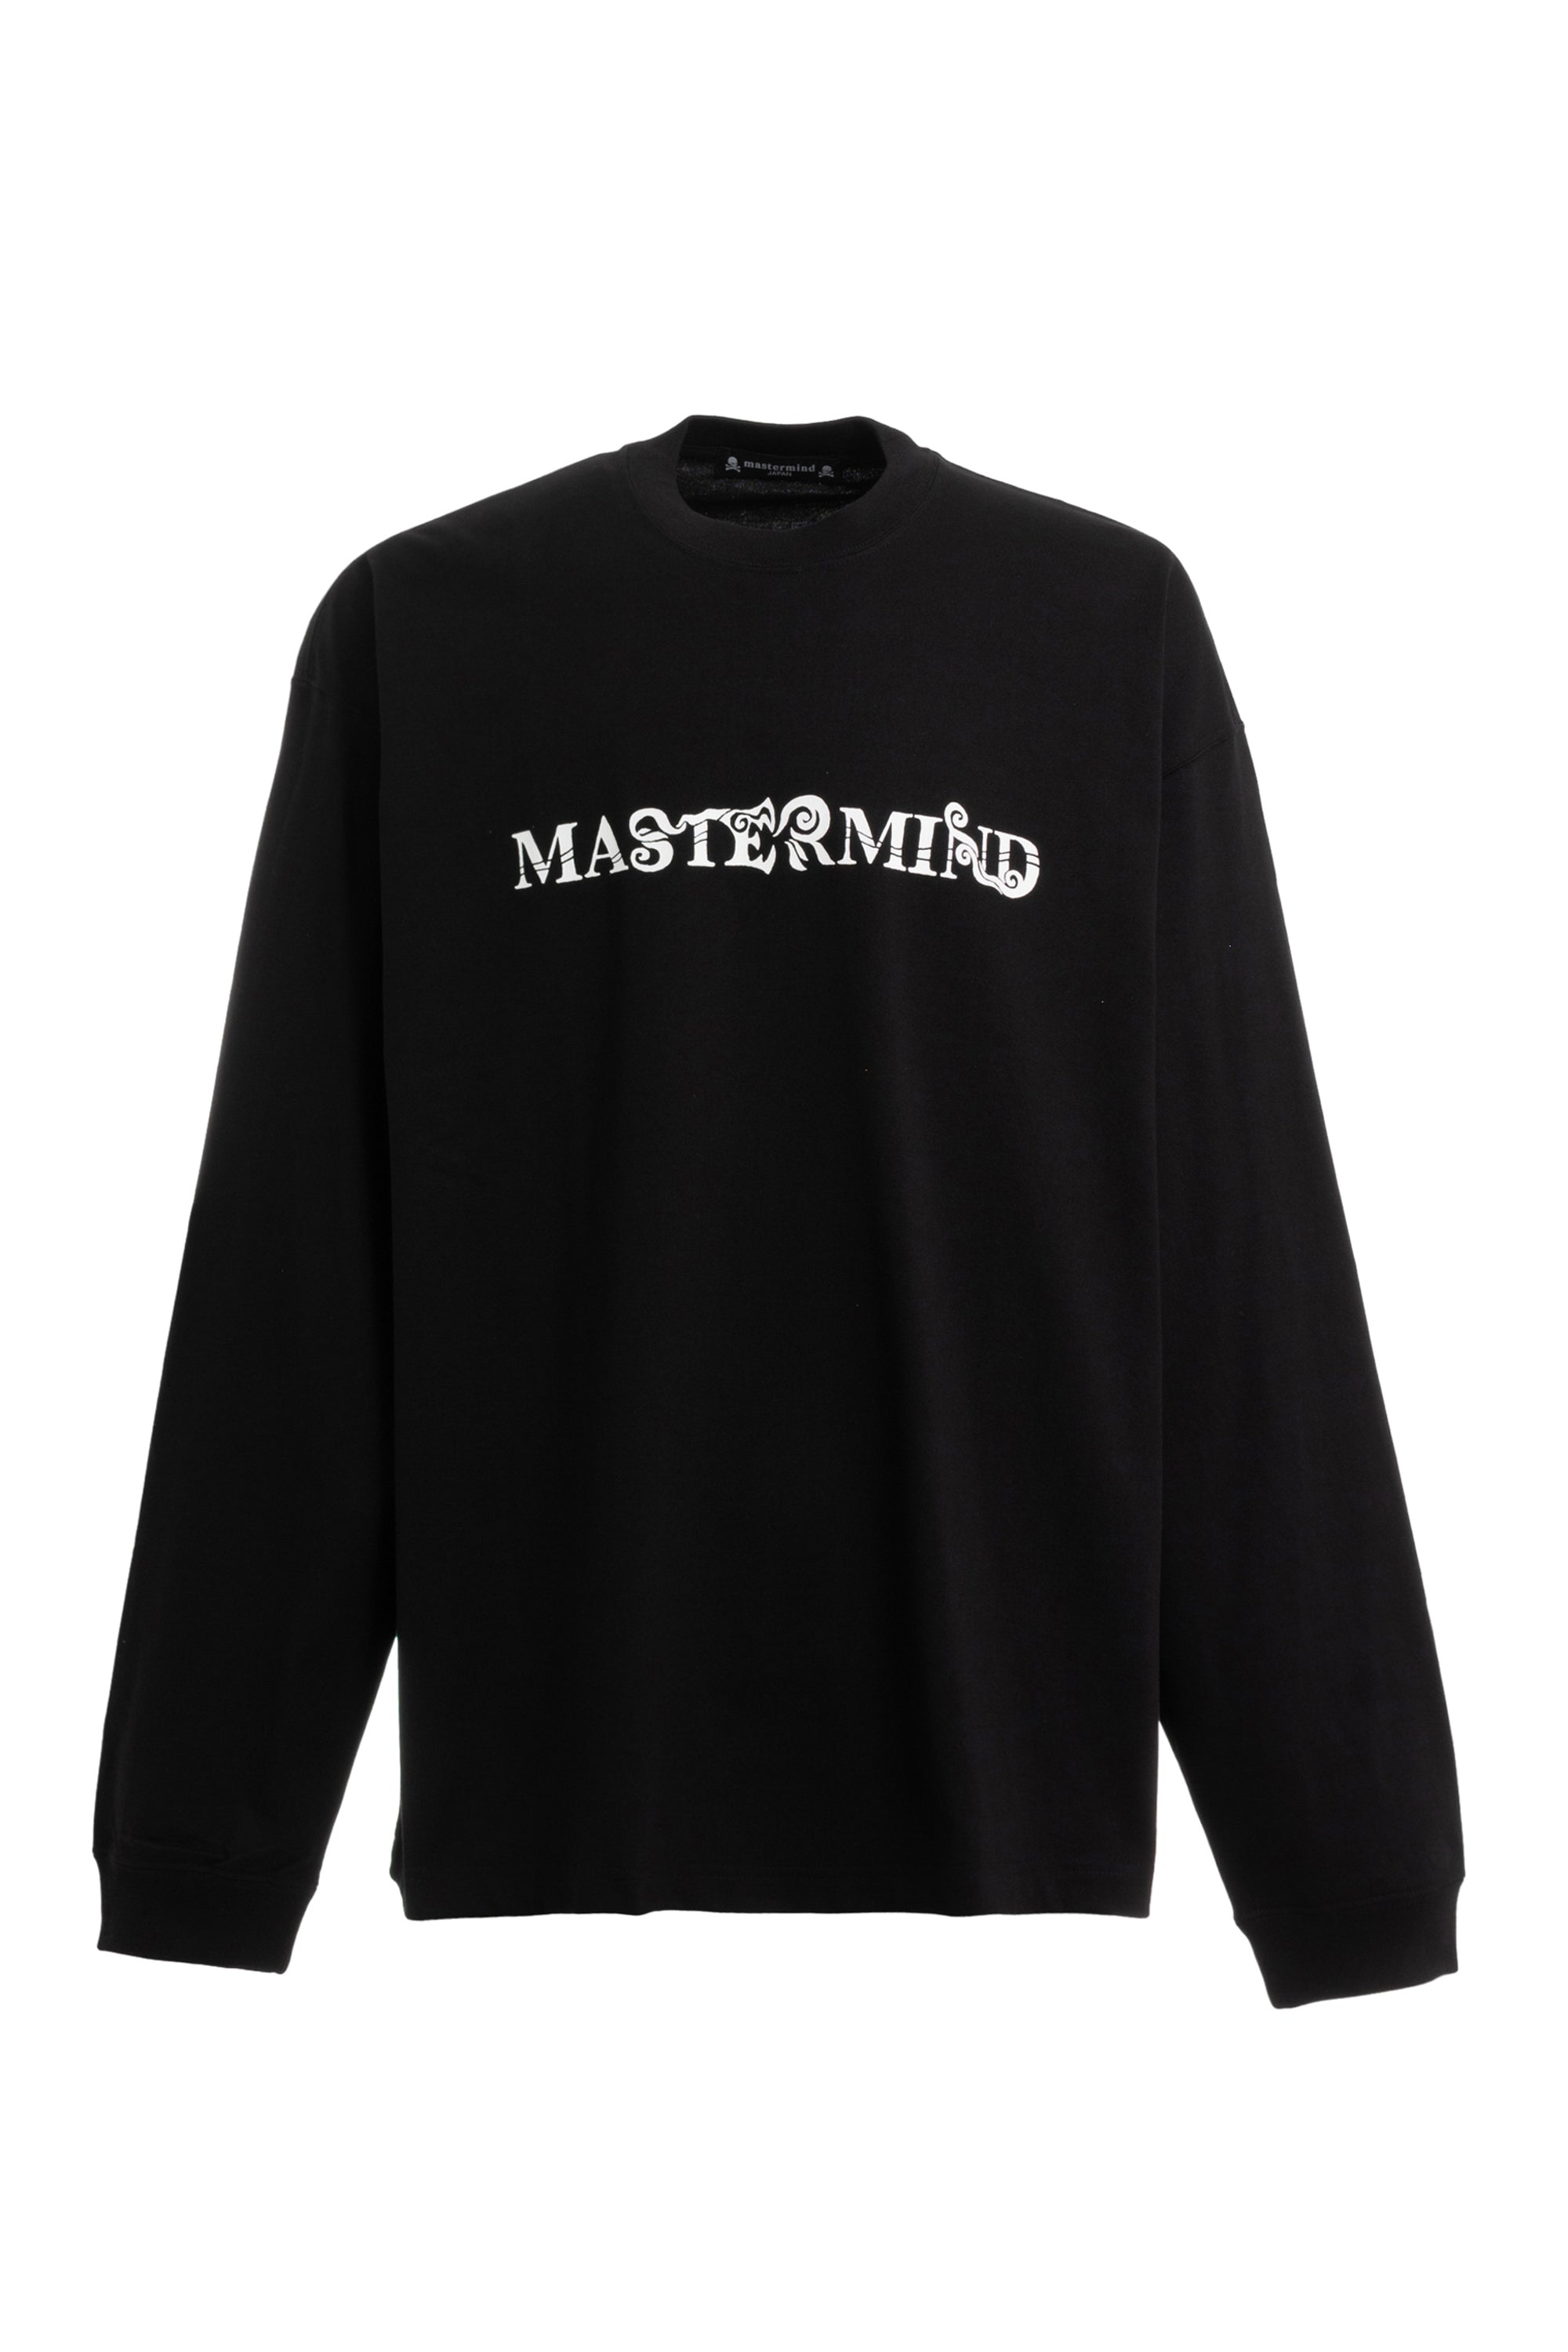 adidas by MASTERMIND TEE Mサイズ Tシャツ 新品